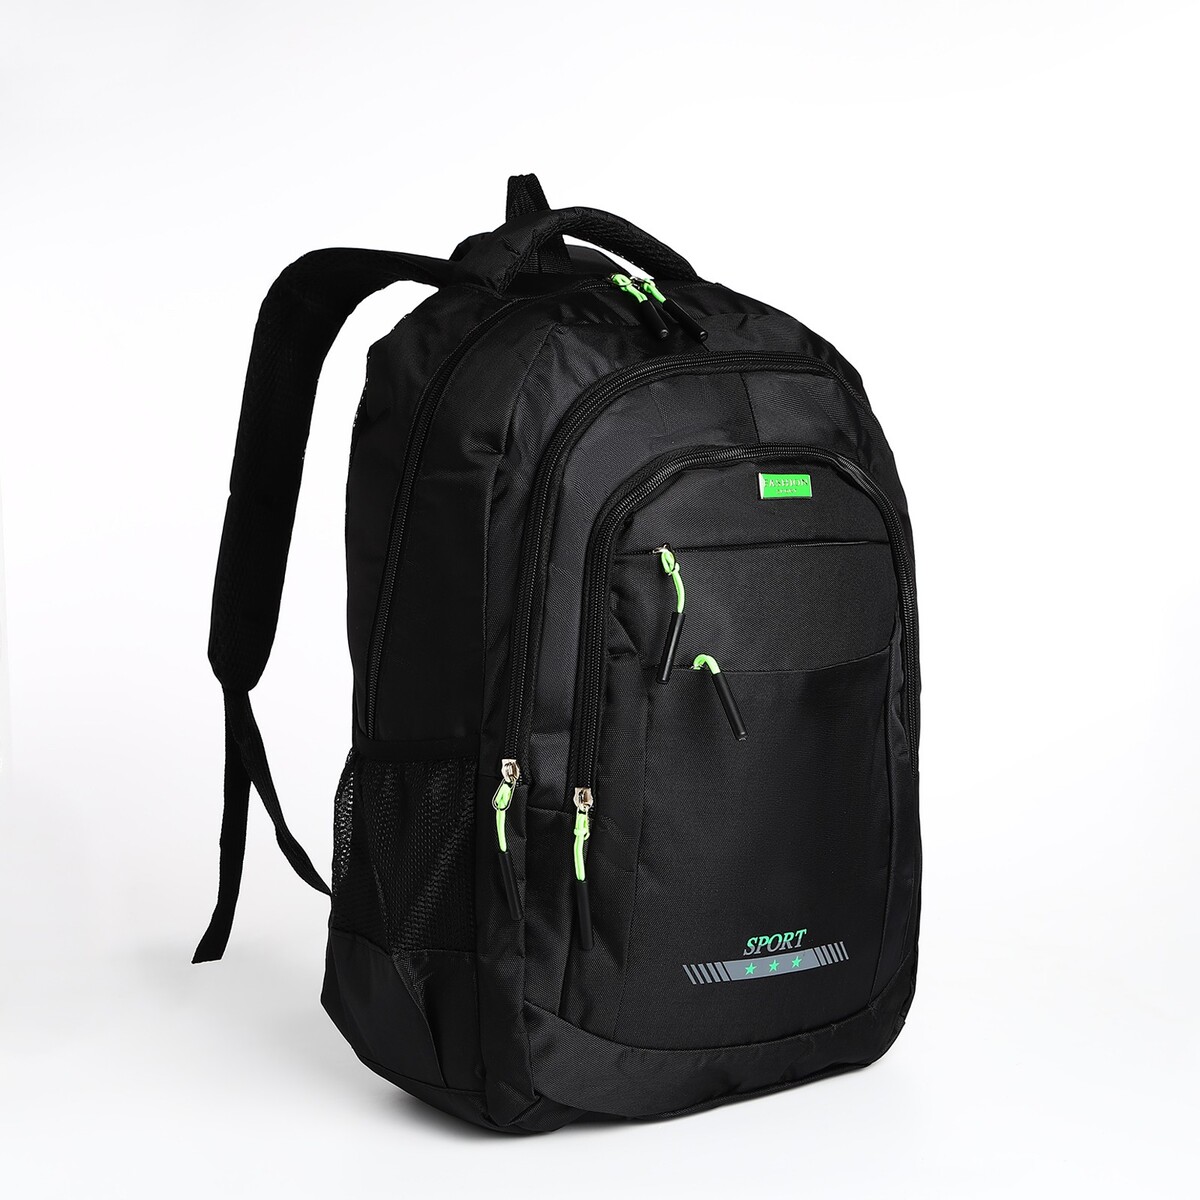 Рюкзак мужской на молнии, 4 наружных кармана, цвет черный/зеленый